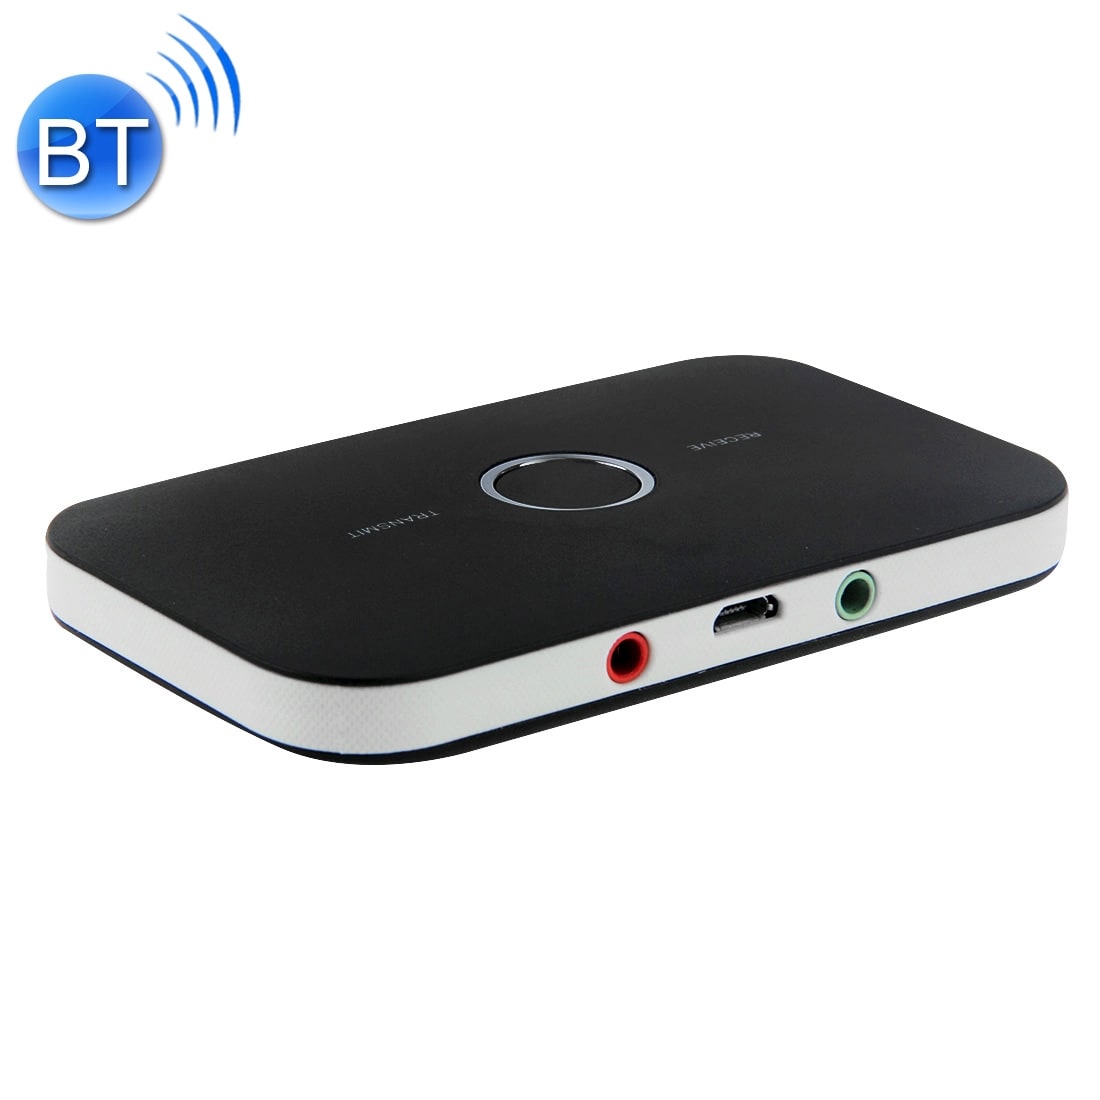 Bluetooth 2i1 Sändare / Mottagare i ett